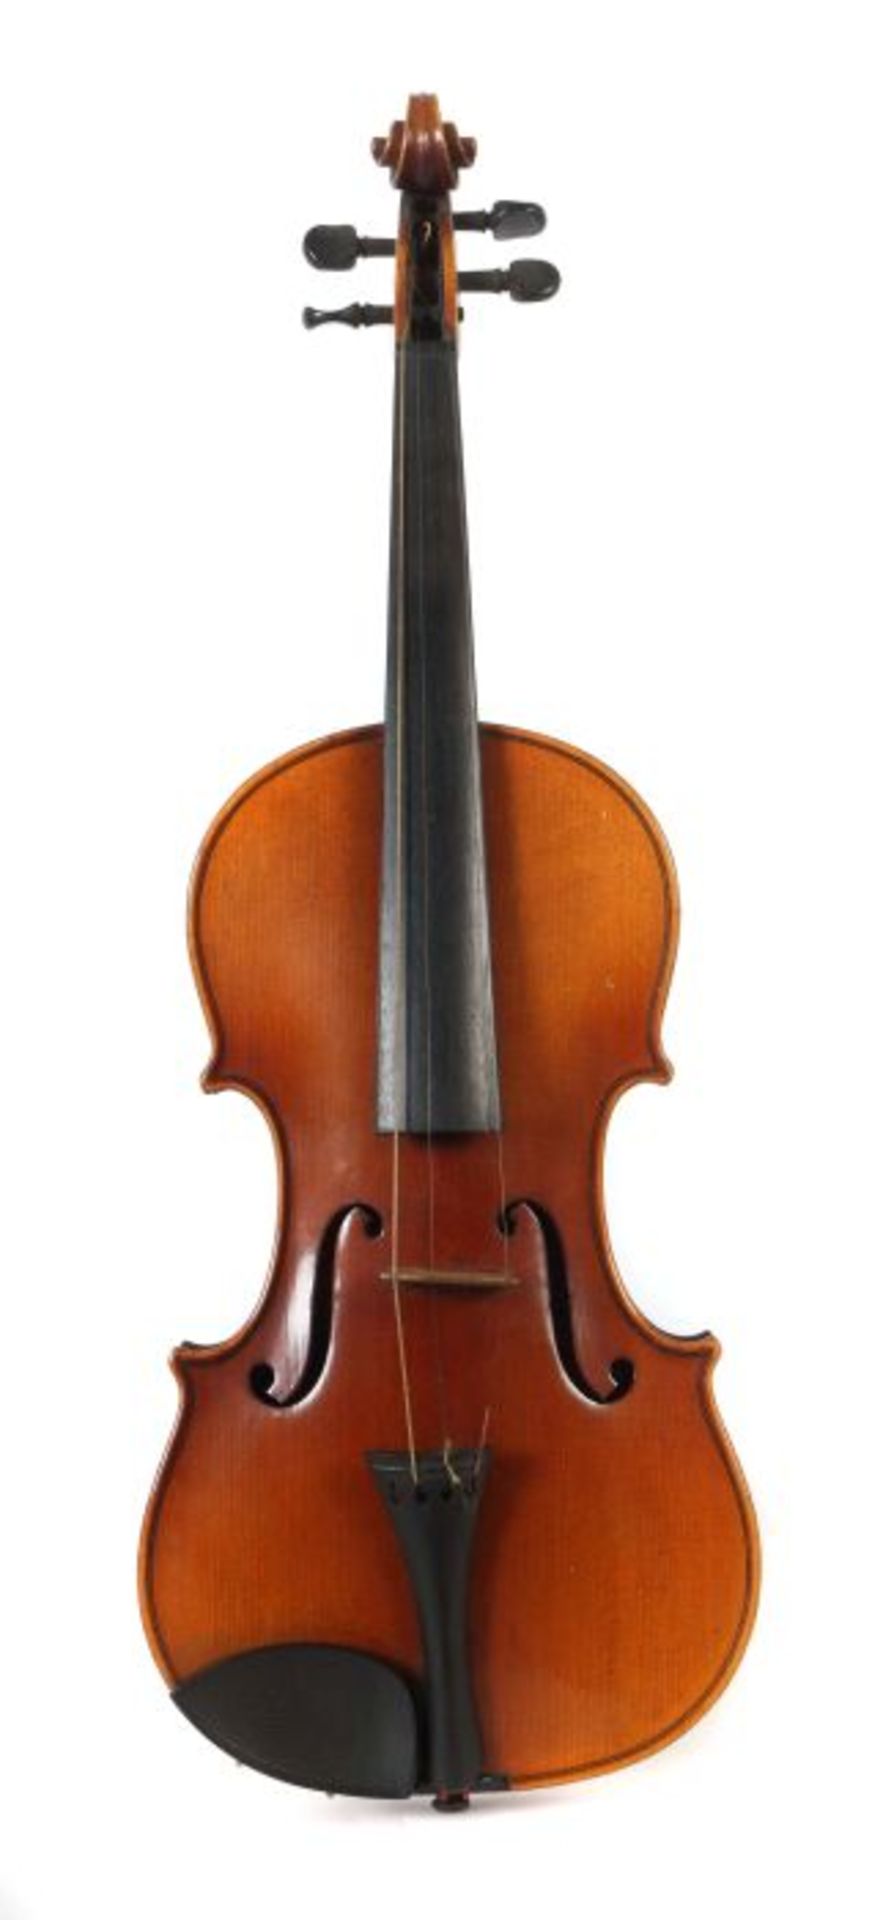 Geige mit 2 Bögen auf innenliegendem Zettel bez: "Antonius Stradivarius Cremonensis Facibat Anno